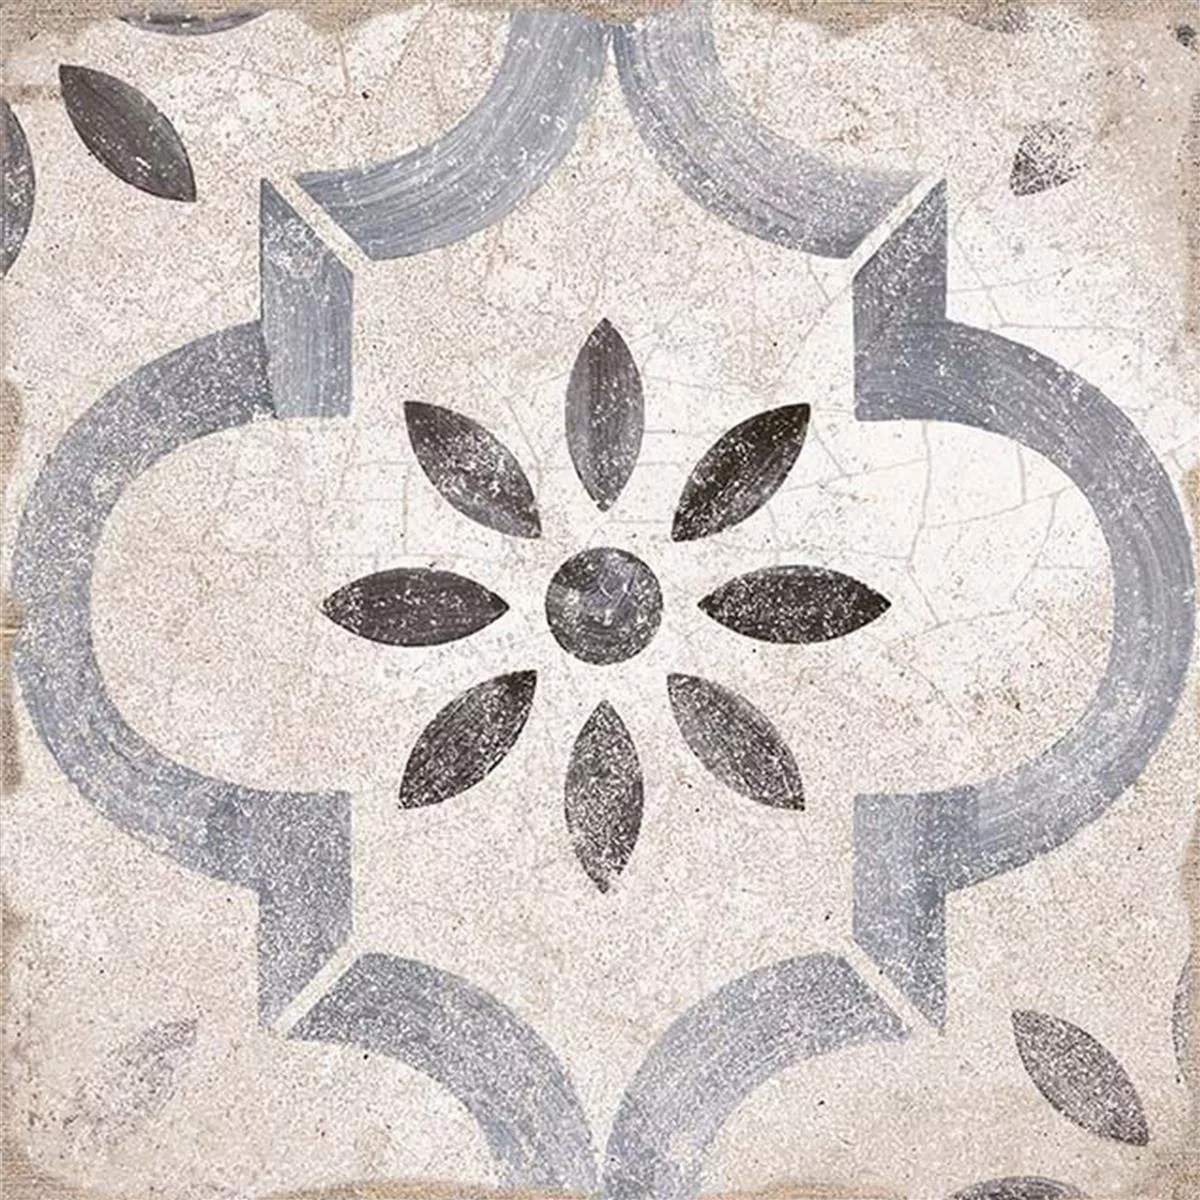 Kameniny S Porcelánovou Povrchovou Úpravou Dlaždice Allora Dekor Modrá 22,5 x 22,5cm